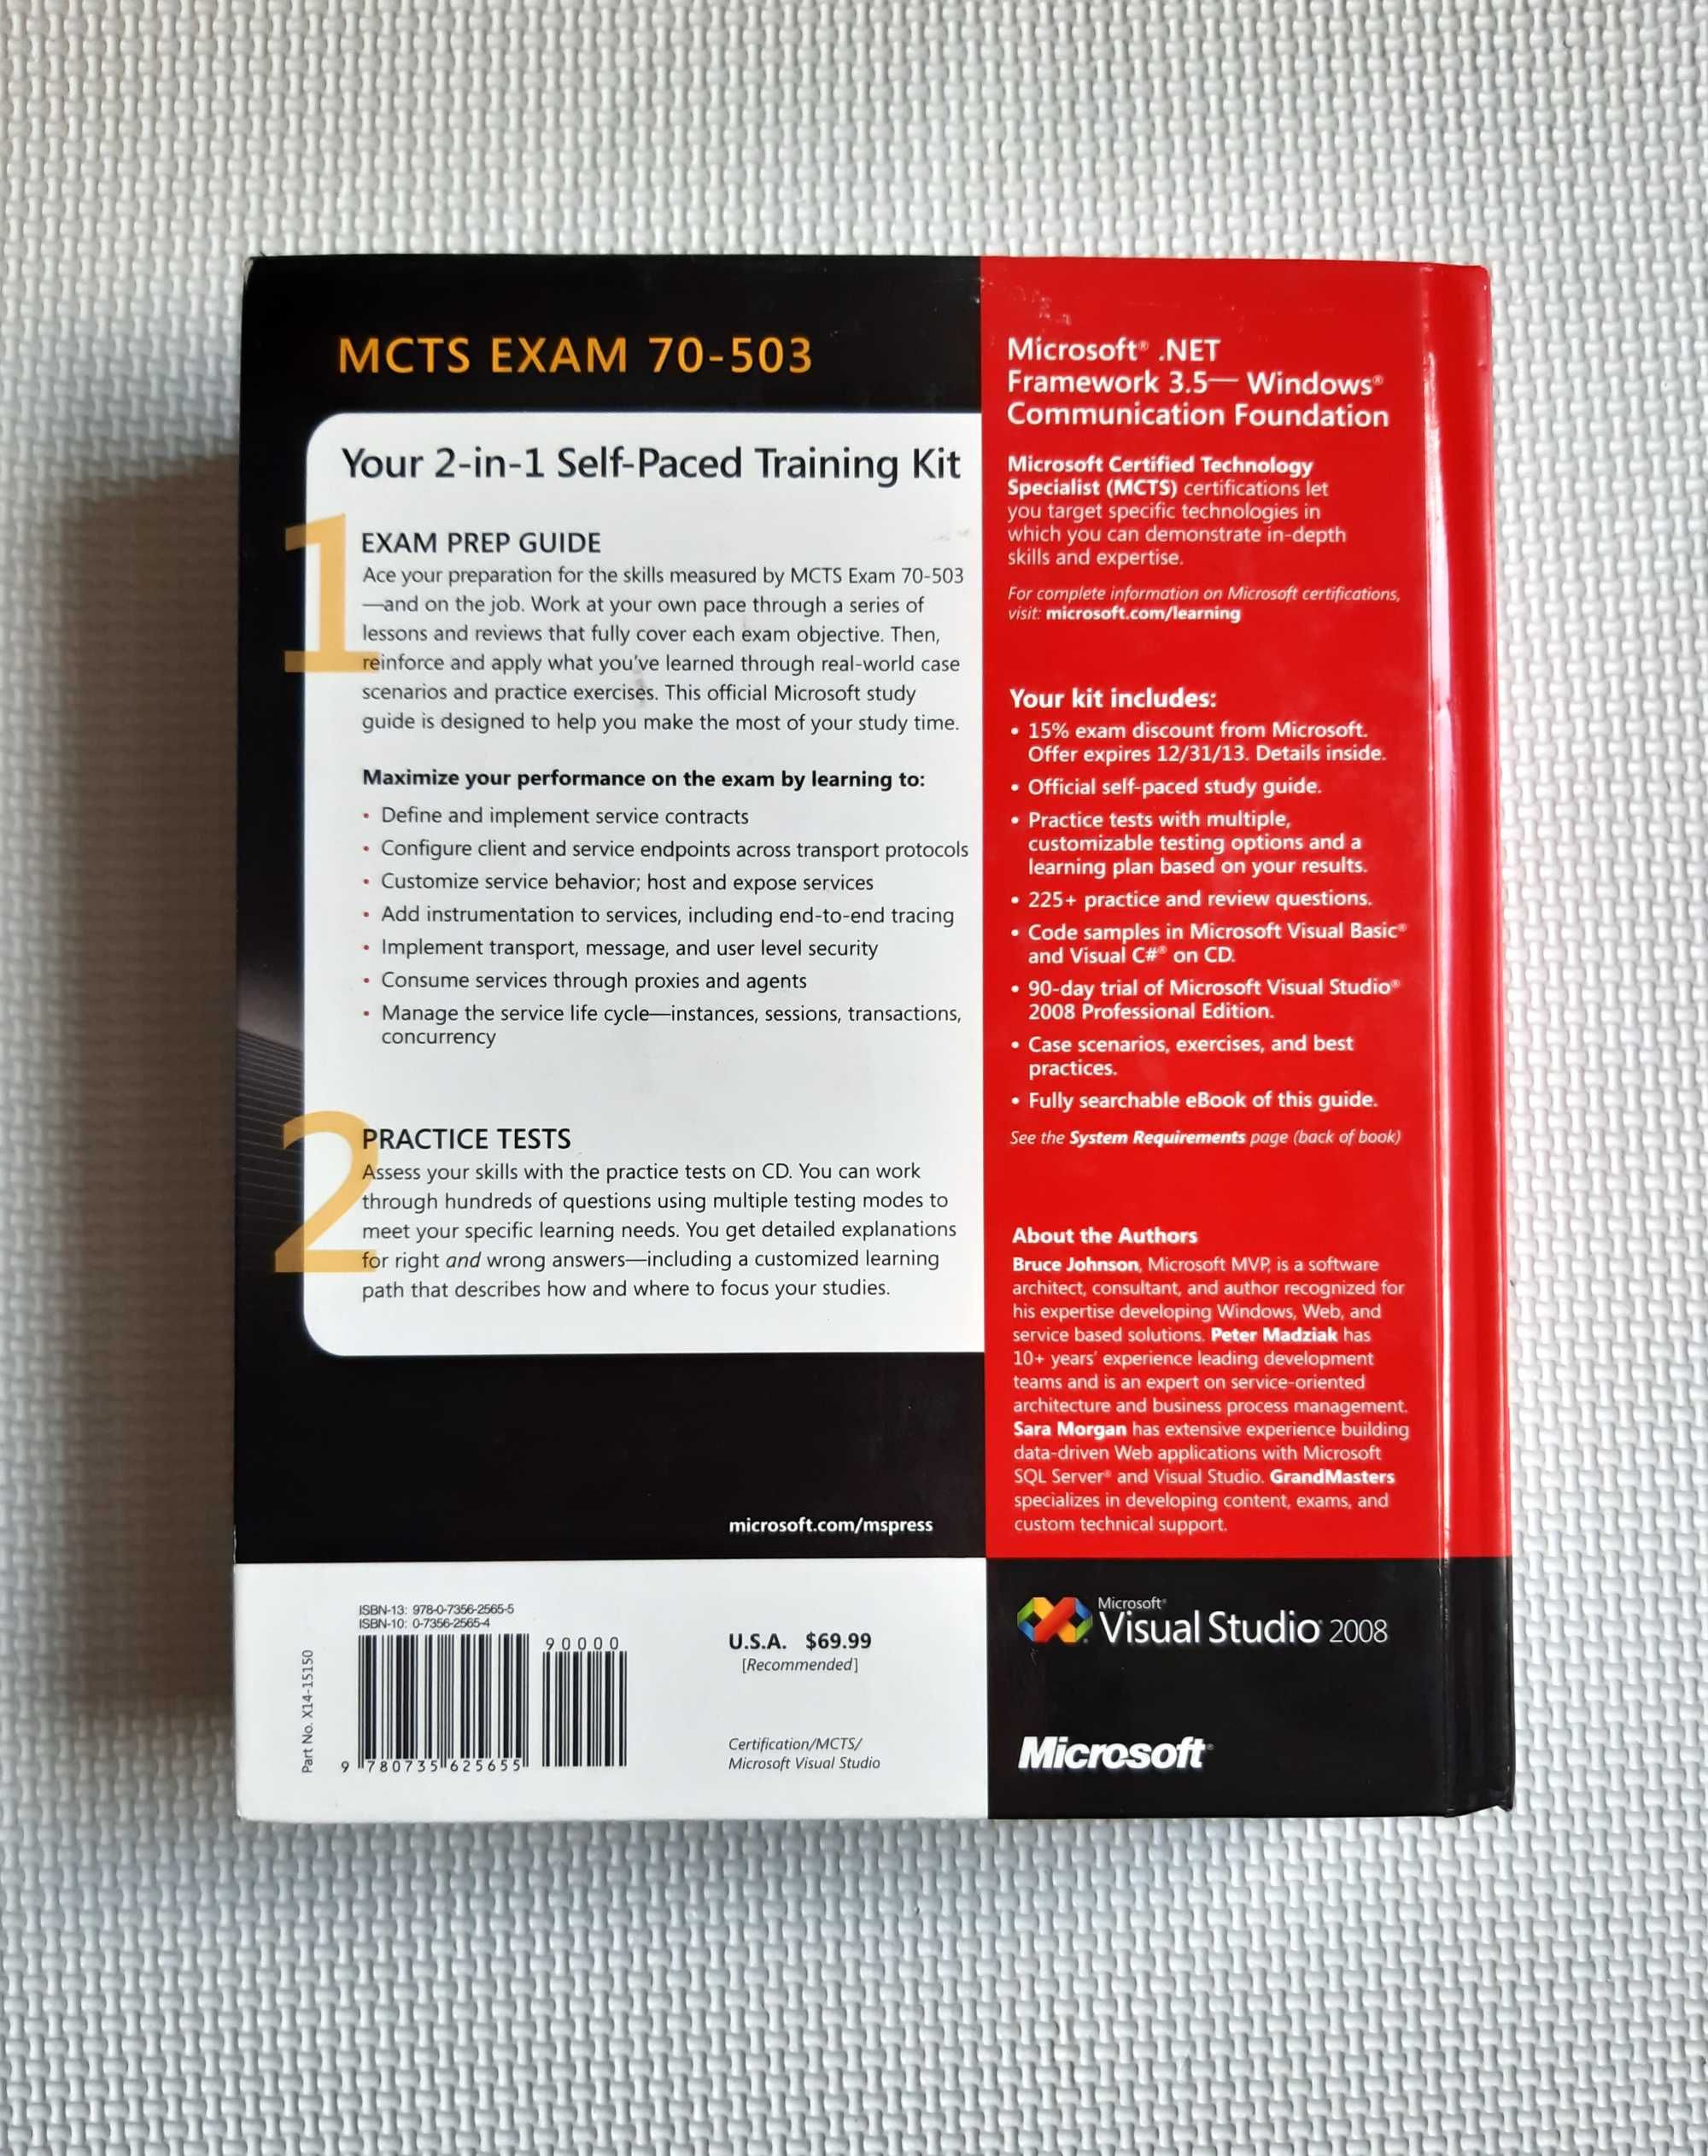 Microsoft .NET Framework 3.5-Windows Książka+ CD